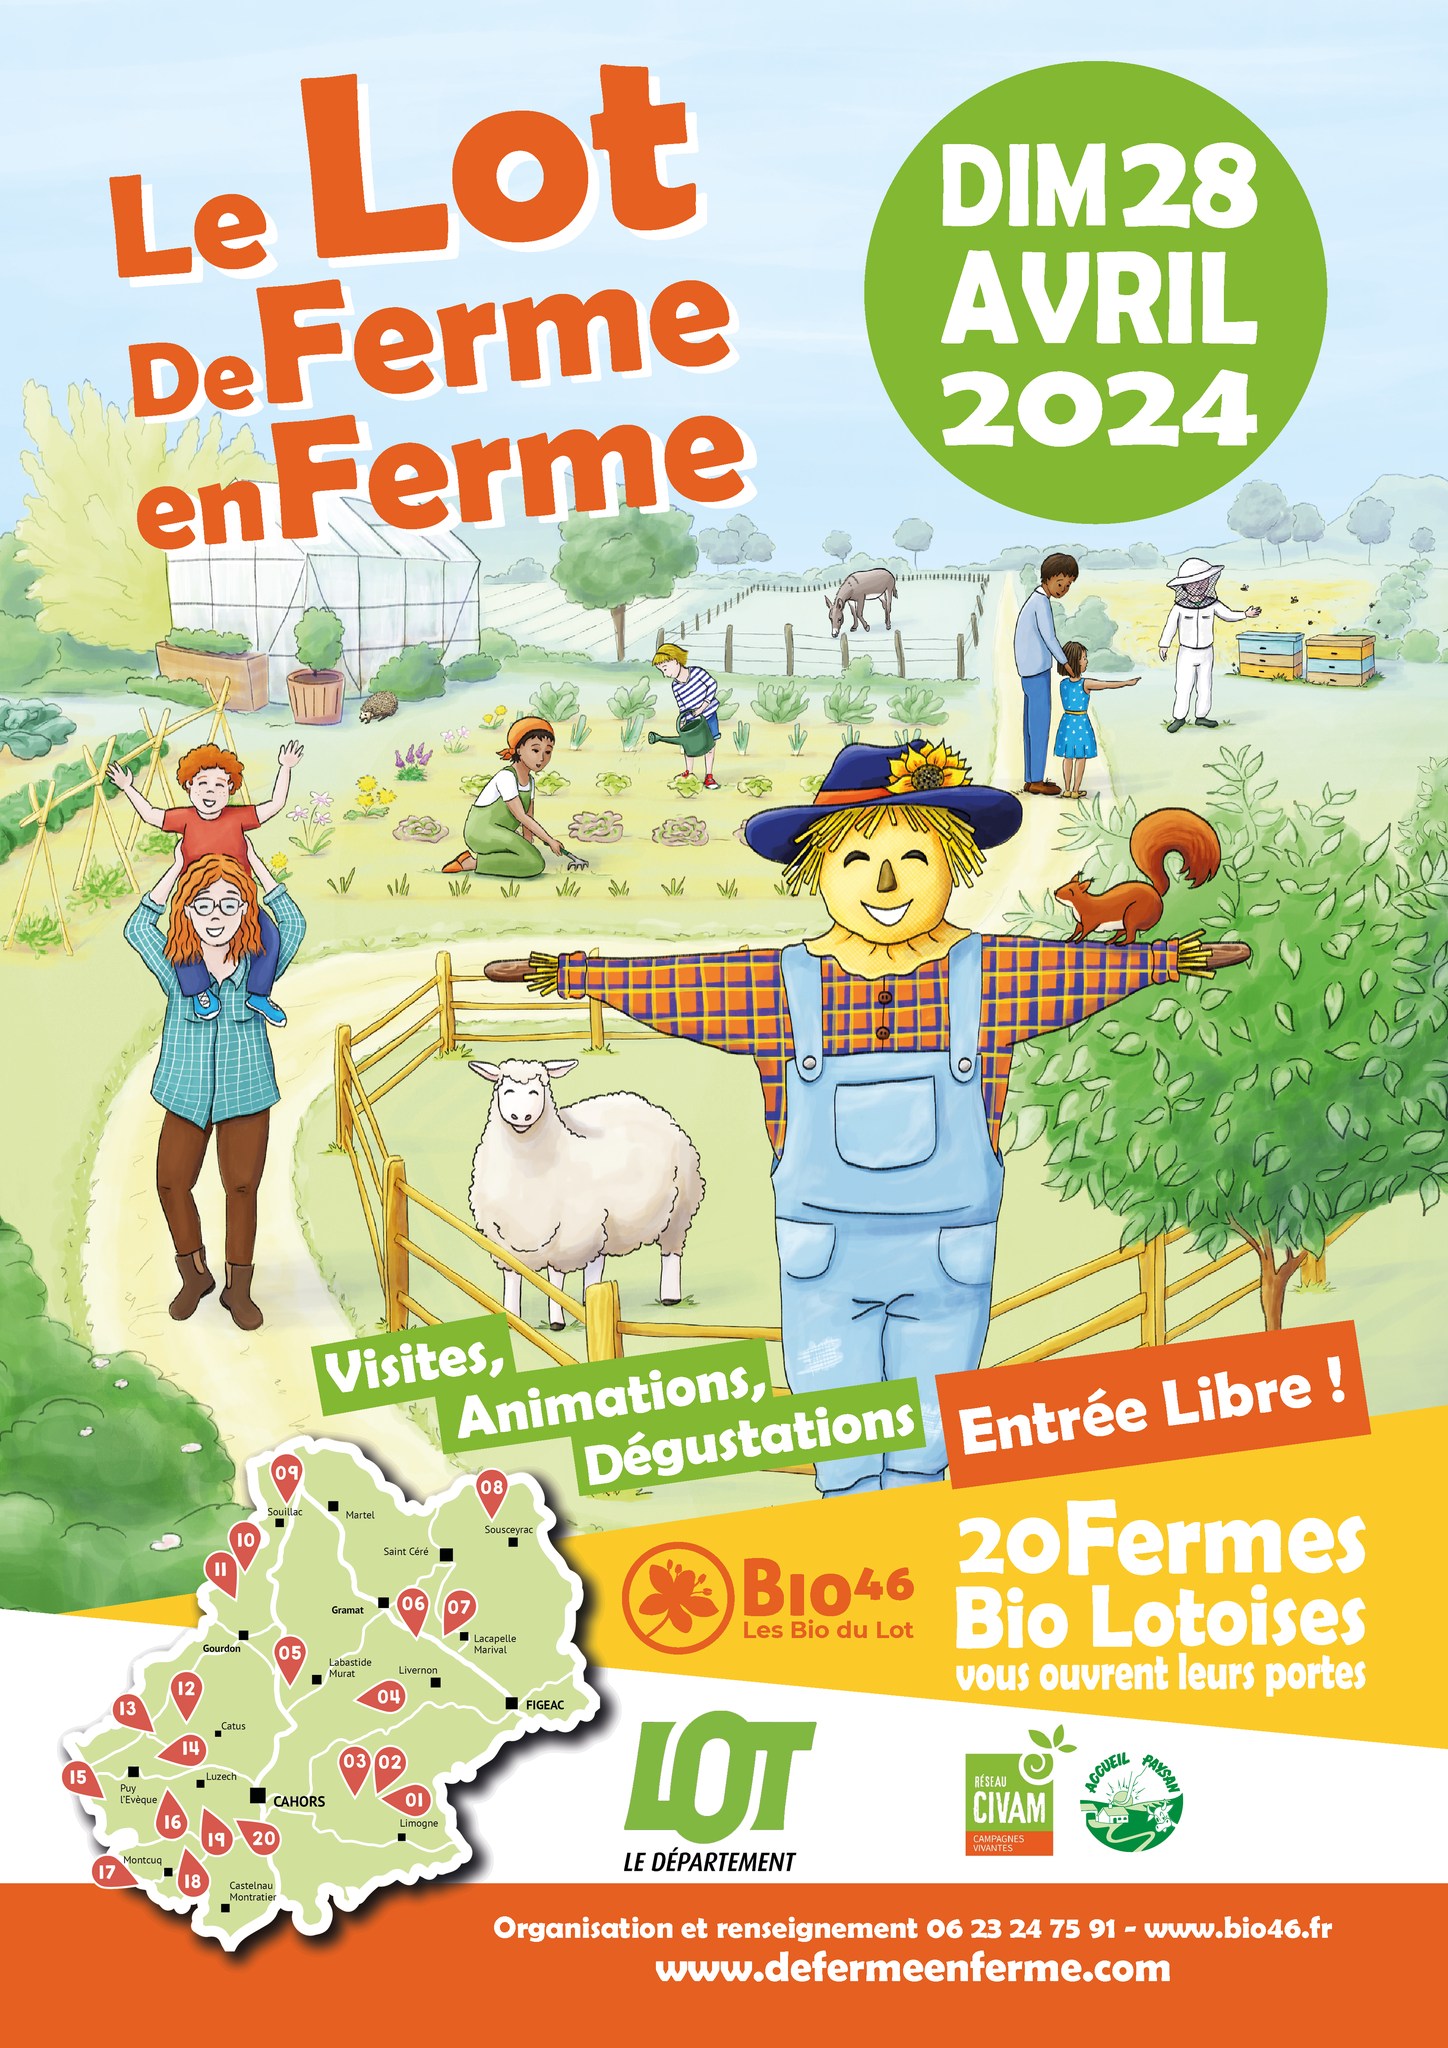 Le Lot de Ferme en Ferme : Les Gonies  France Occitanie Lot Mauroux 46700